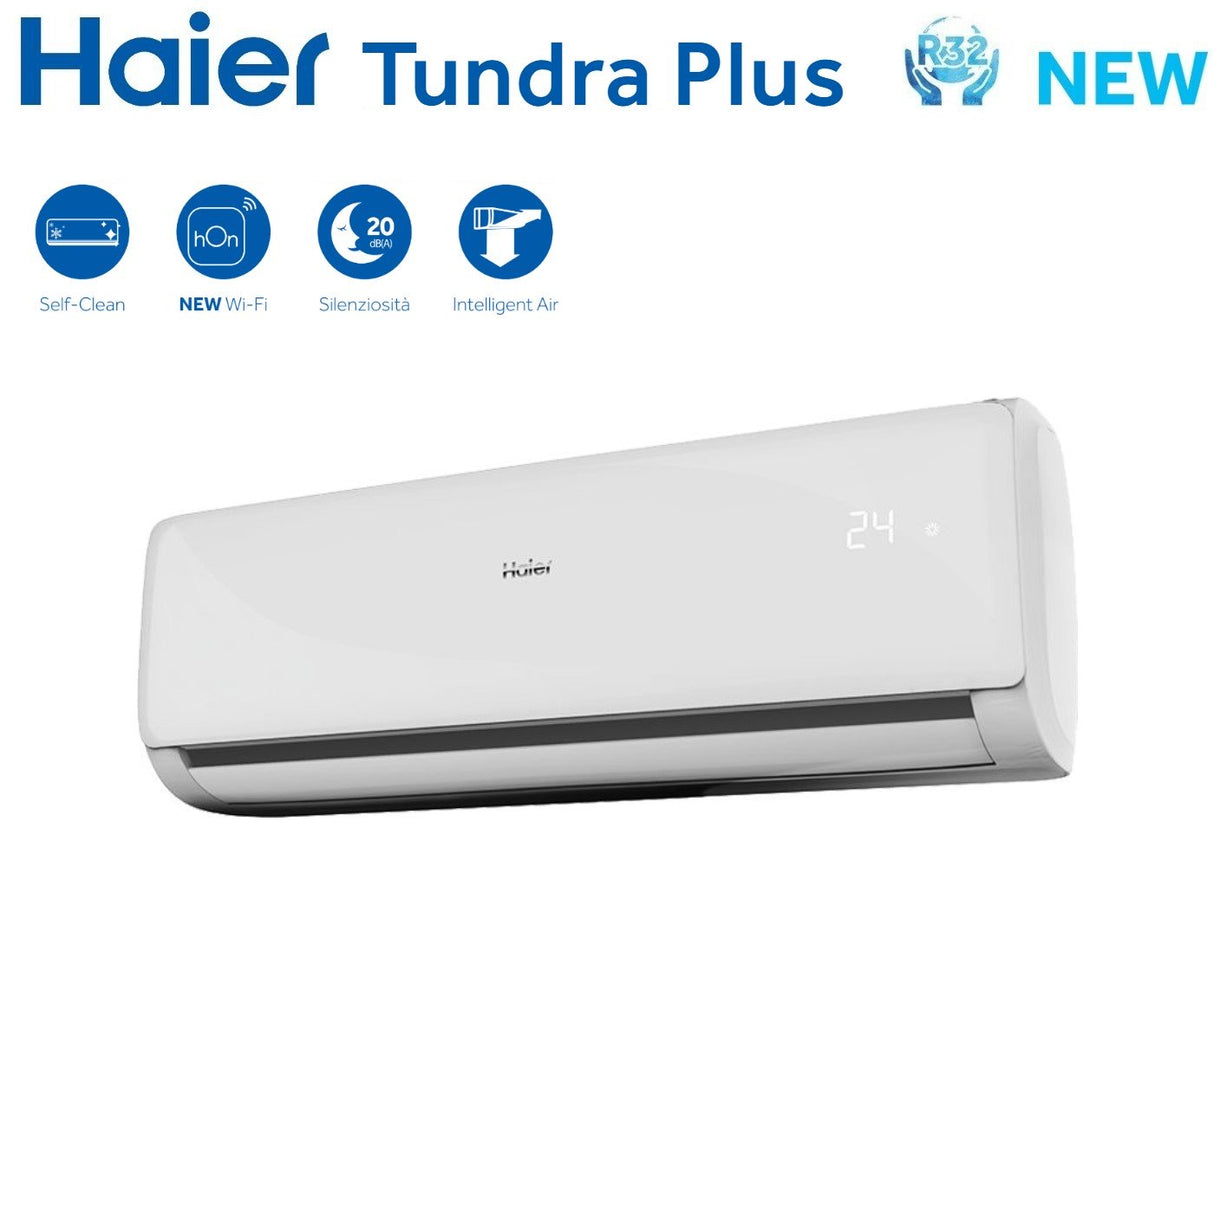 immagine-3-haier-climatizzatore-condizionatore-haier-dual-split-inverter-serie-tundra-plus-912-con-2u50s2sm1fa-r-32-wi-fi-integrato-900012000-ean-8059657012876